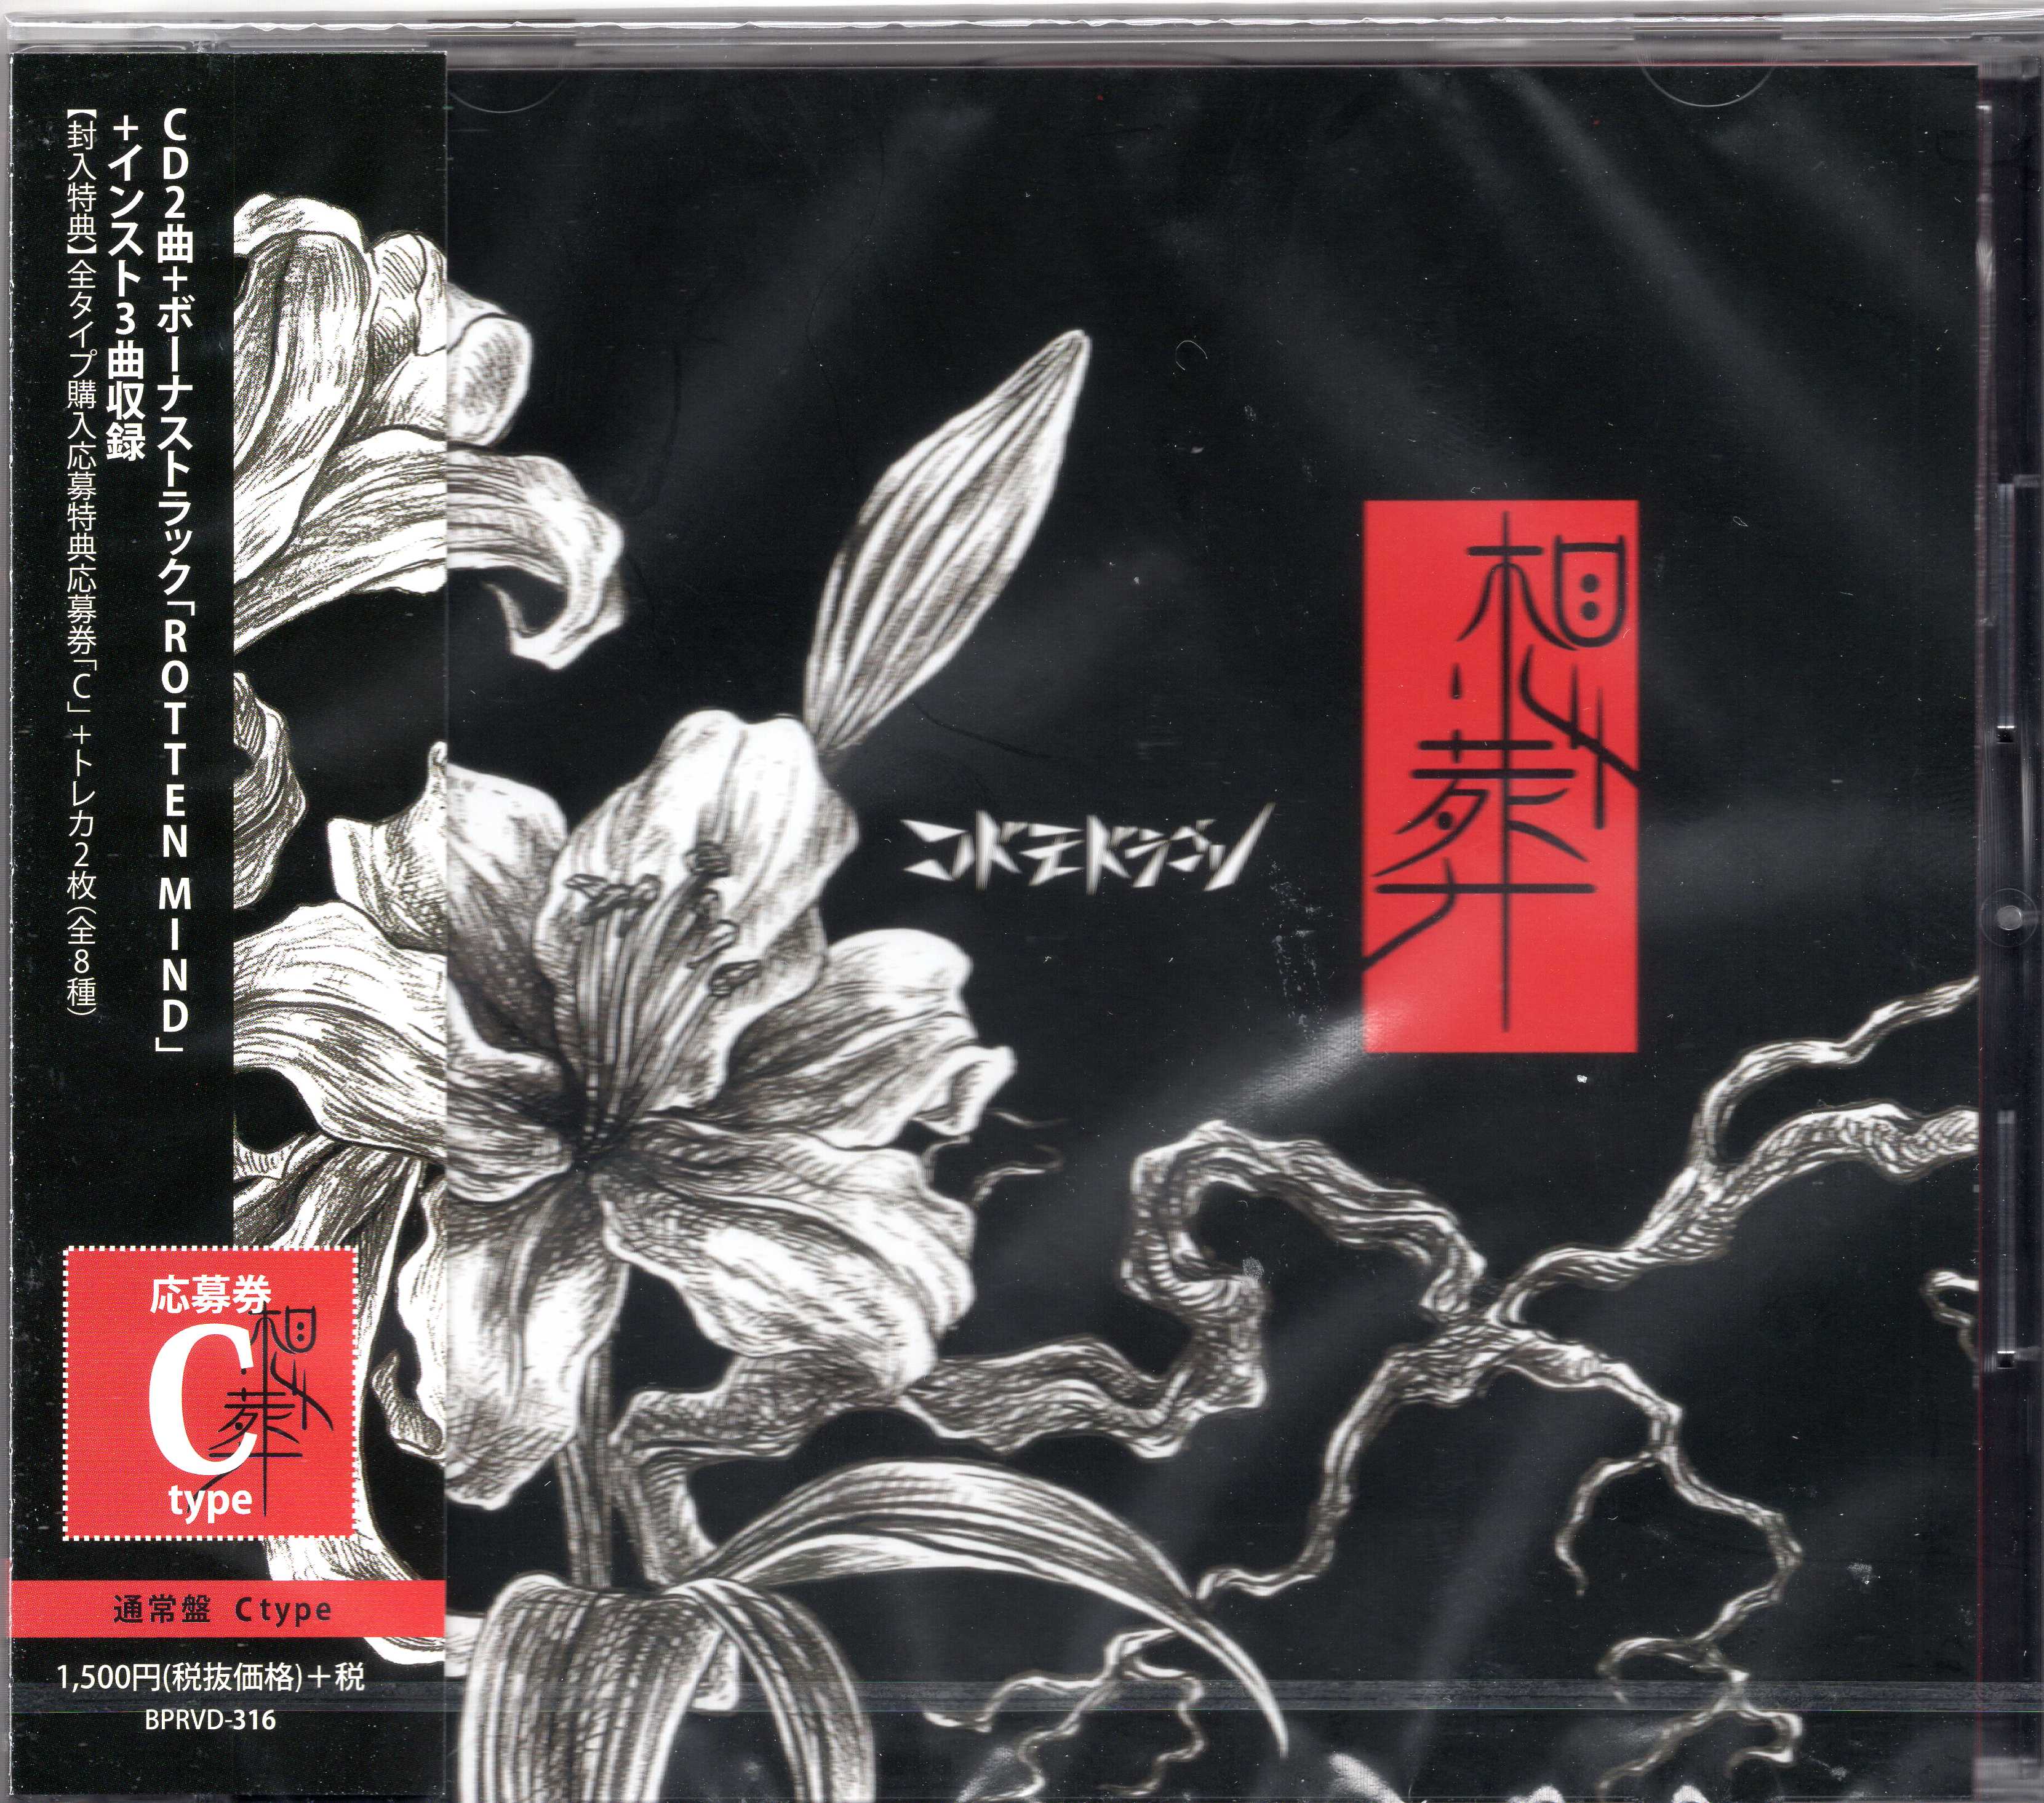 コドモドラゴン の CD 【通常盤C】想葬